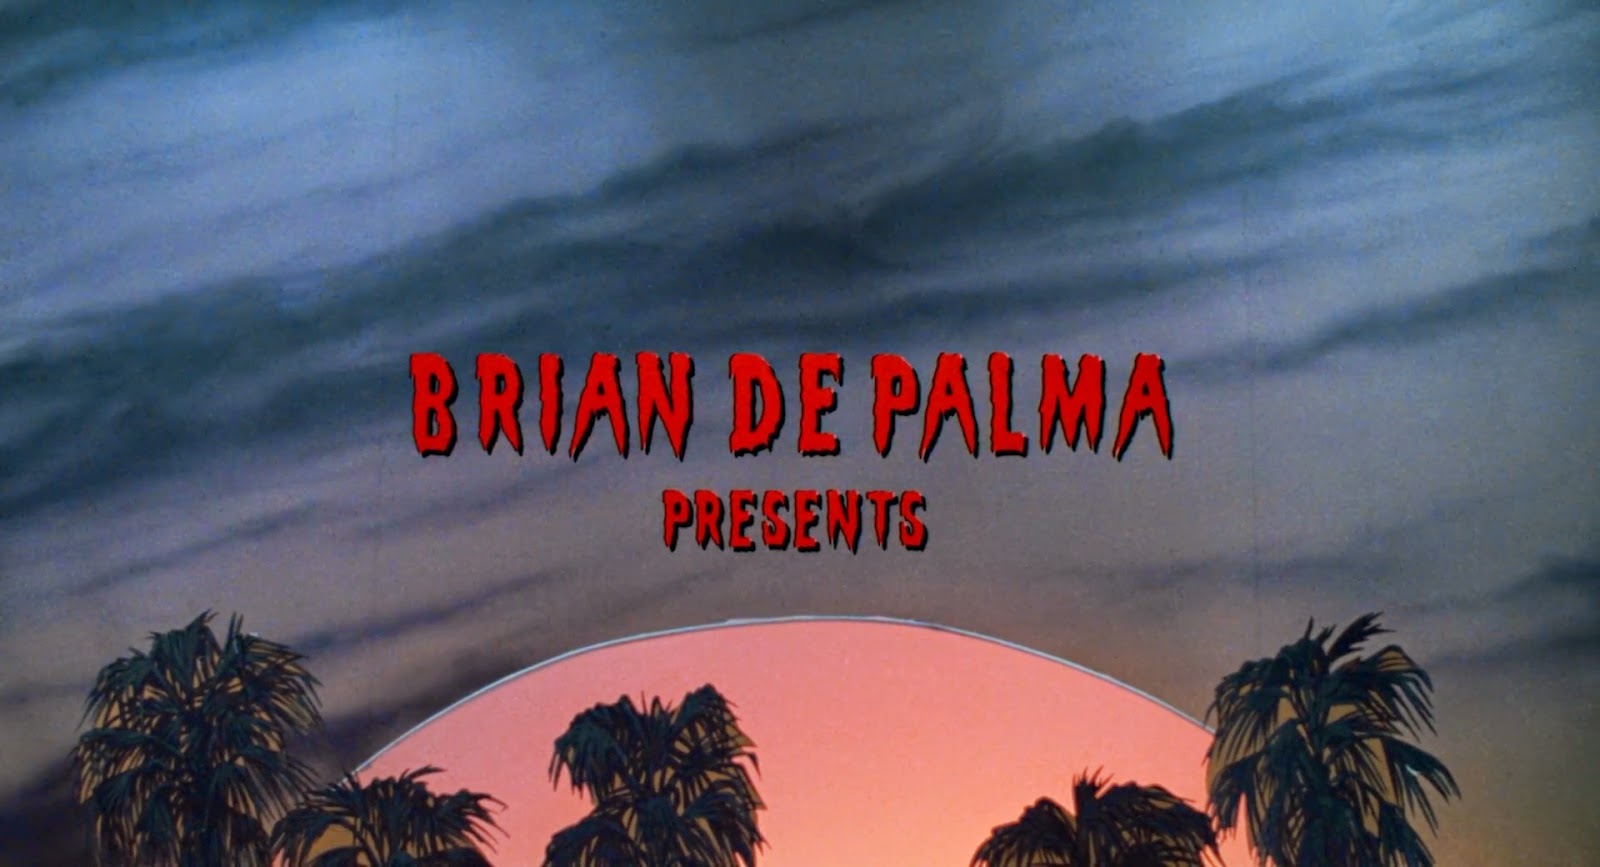 Body double (Brian De Palma, 1981).